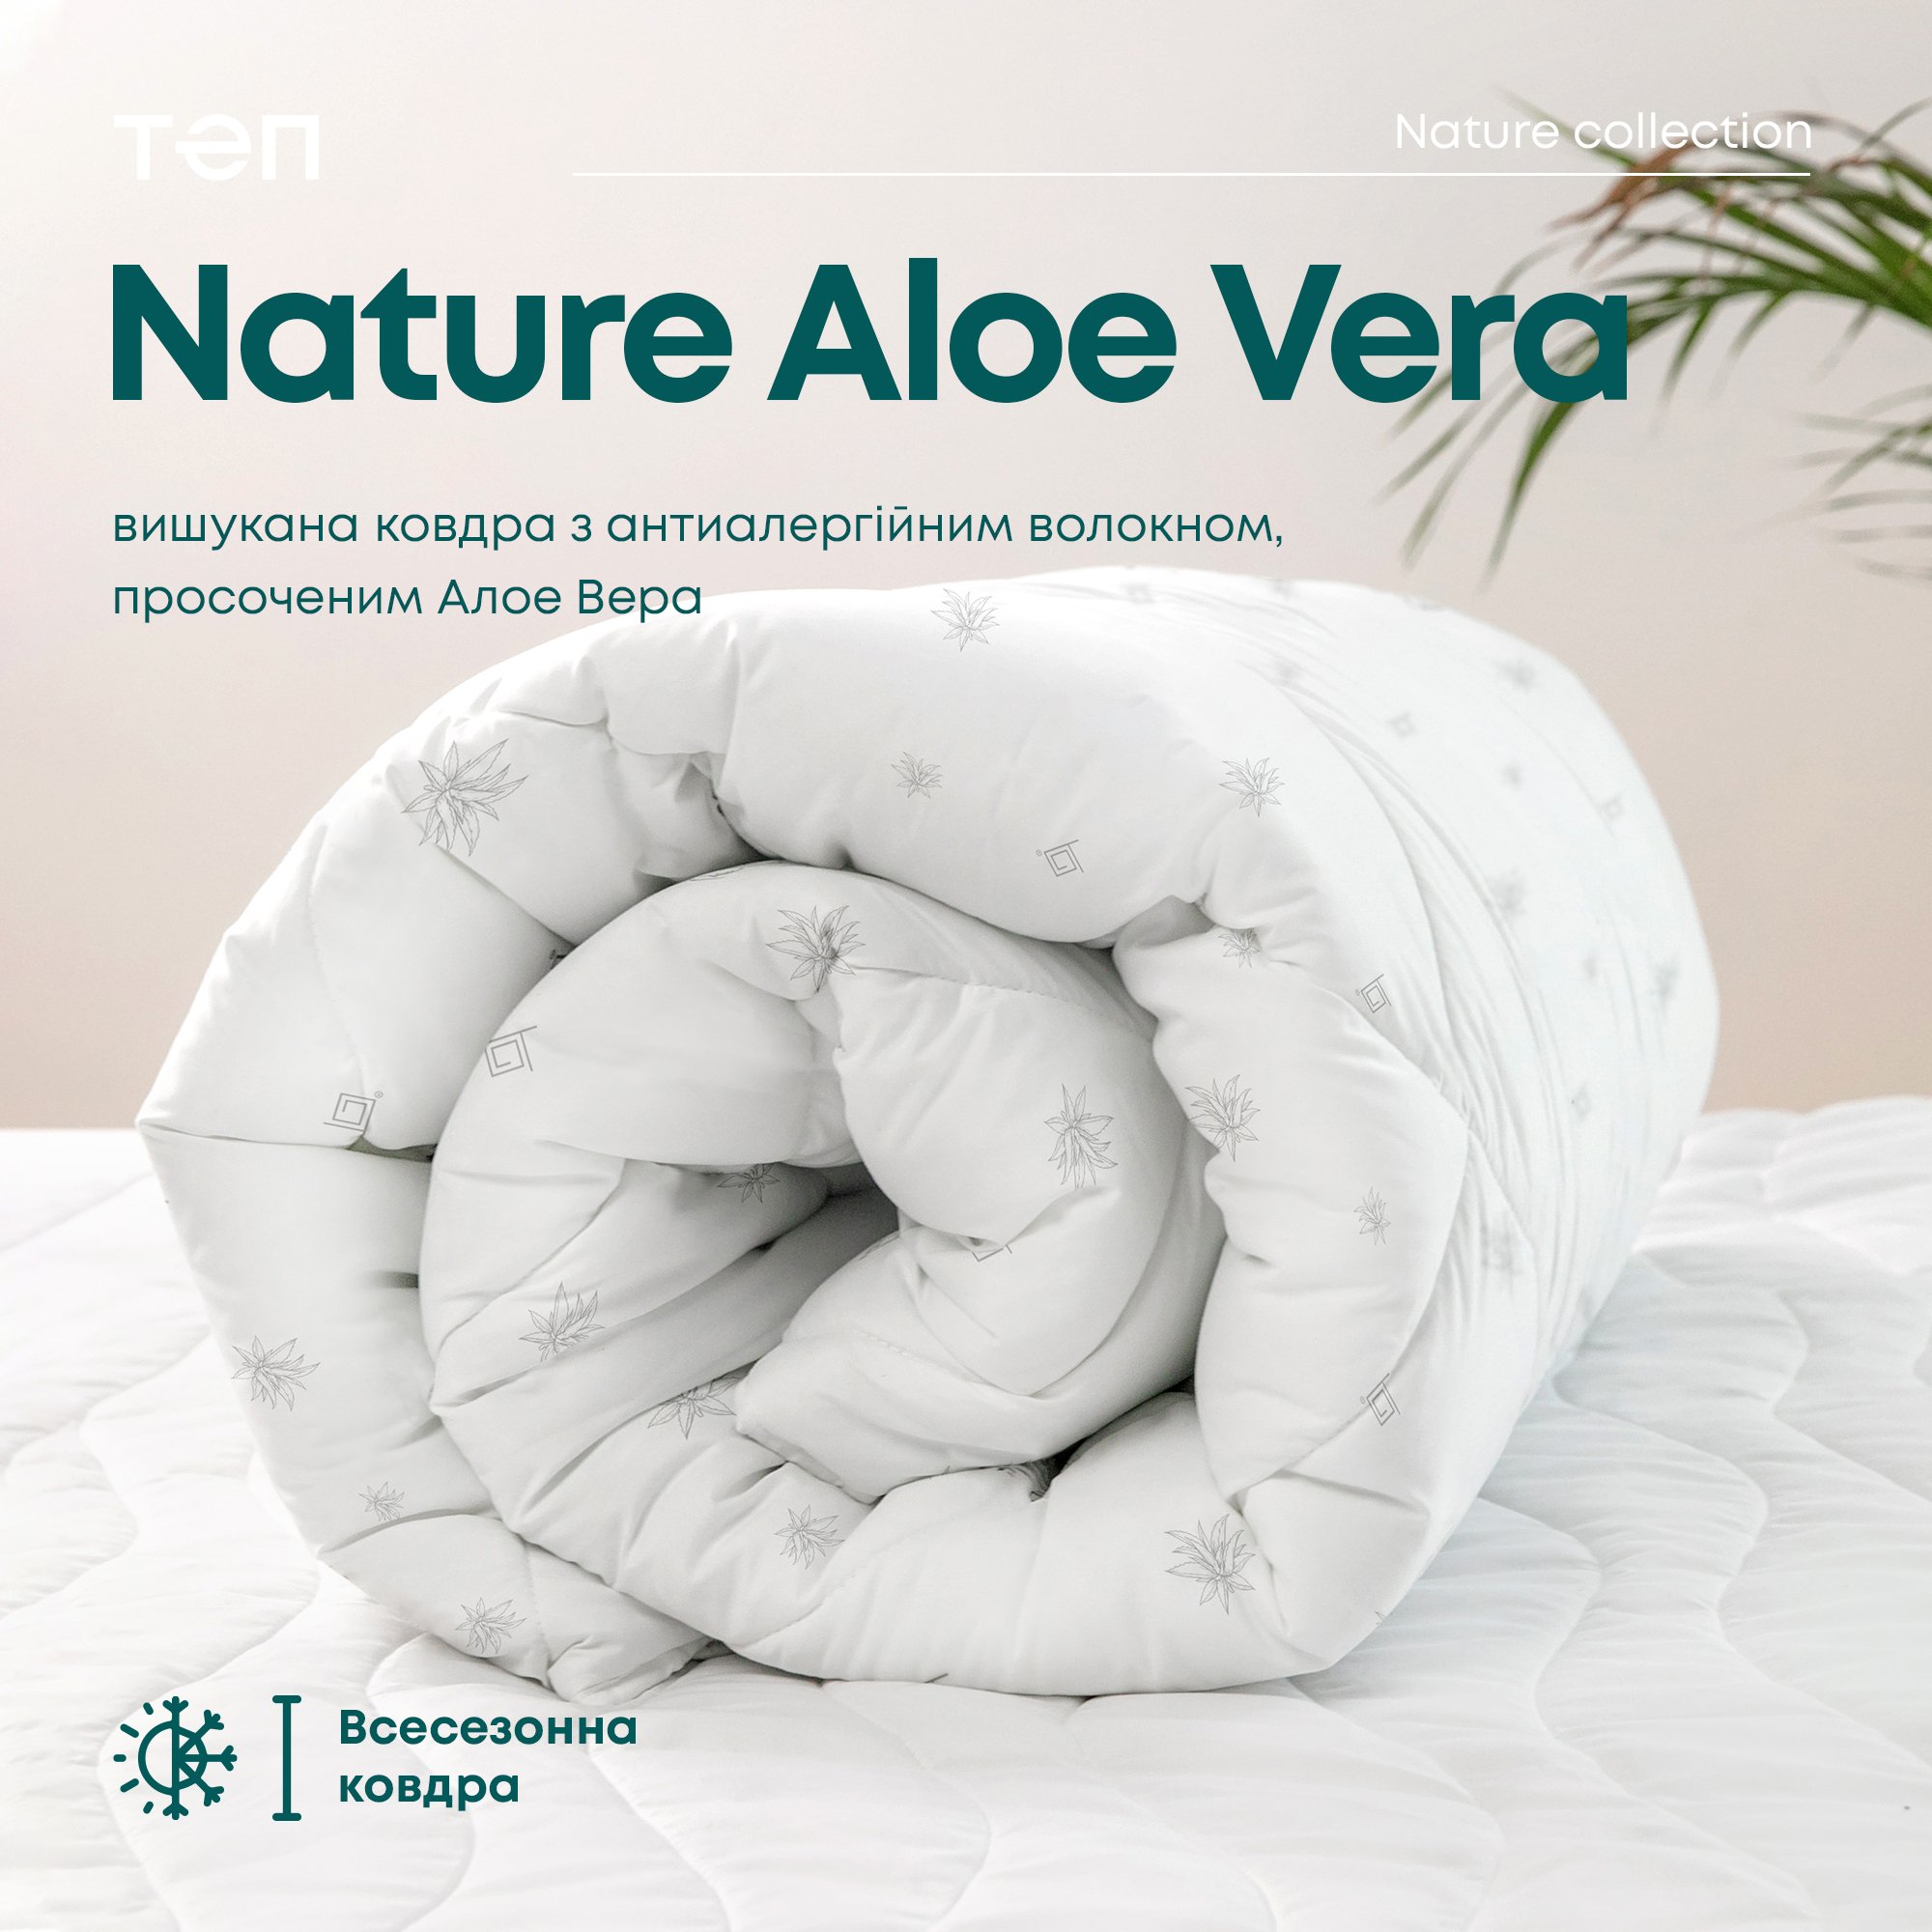 Одеяло ТЕП Membrana Print Aloe Vera Природа 150x210 белое (1-02571_00000) - фото 10